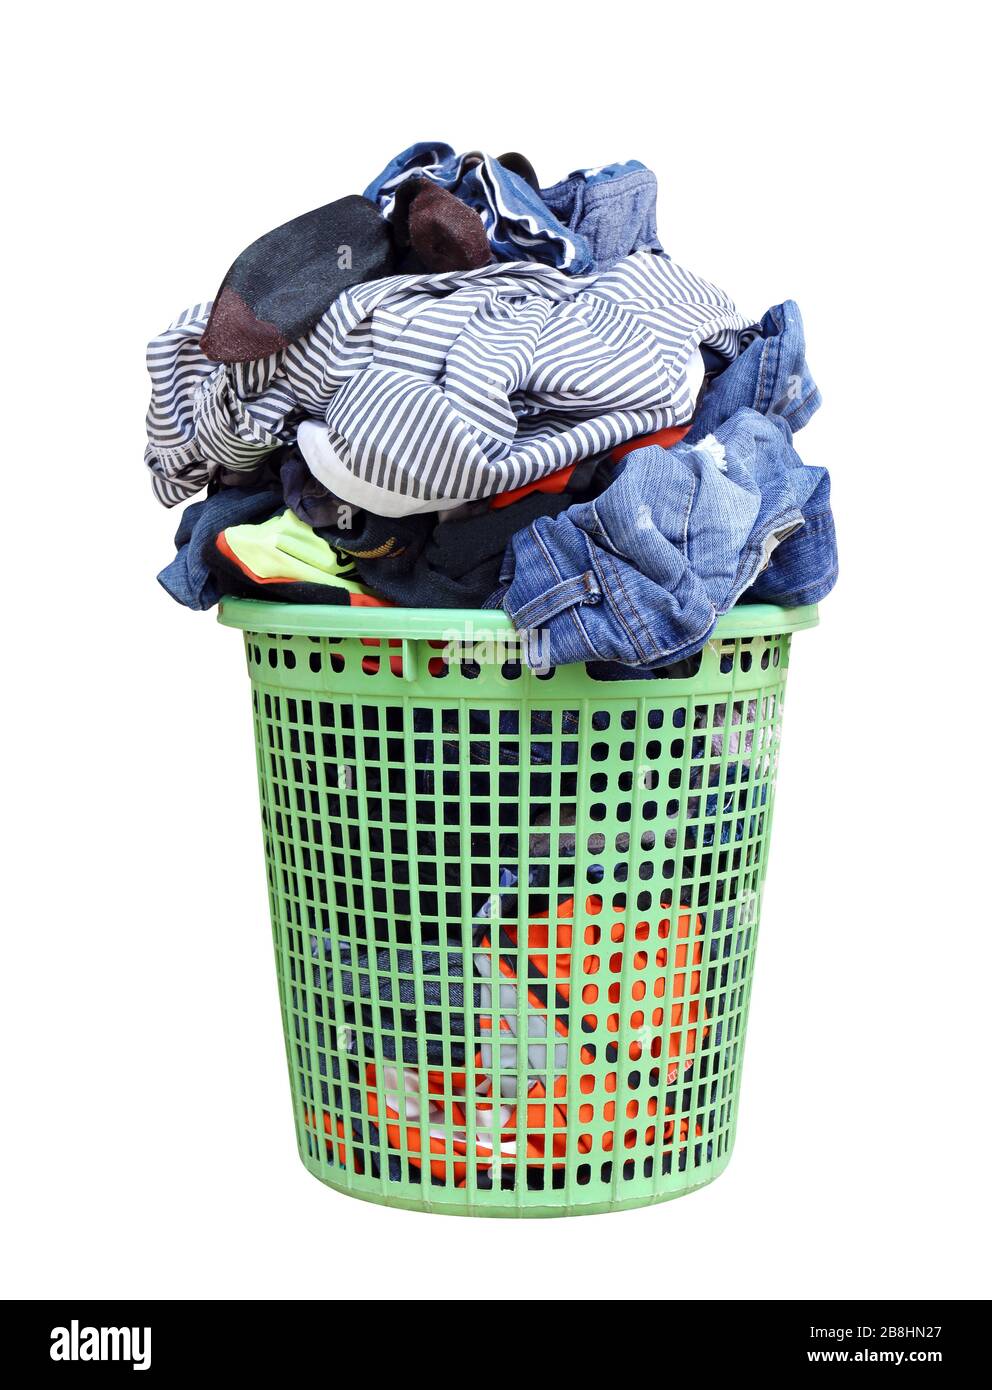 Montón de ropa sucia en una canasta de lavado, servicio de lavandería cesta con colorida toalla, canasto con ropa limpia, colorida en una cesta de colada de Pentecostés Fotografía de -